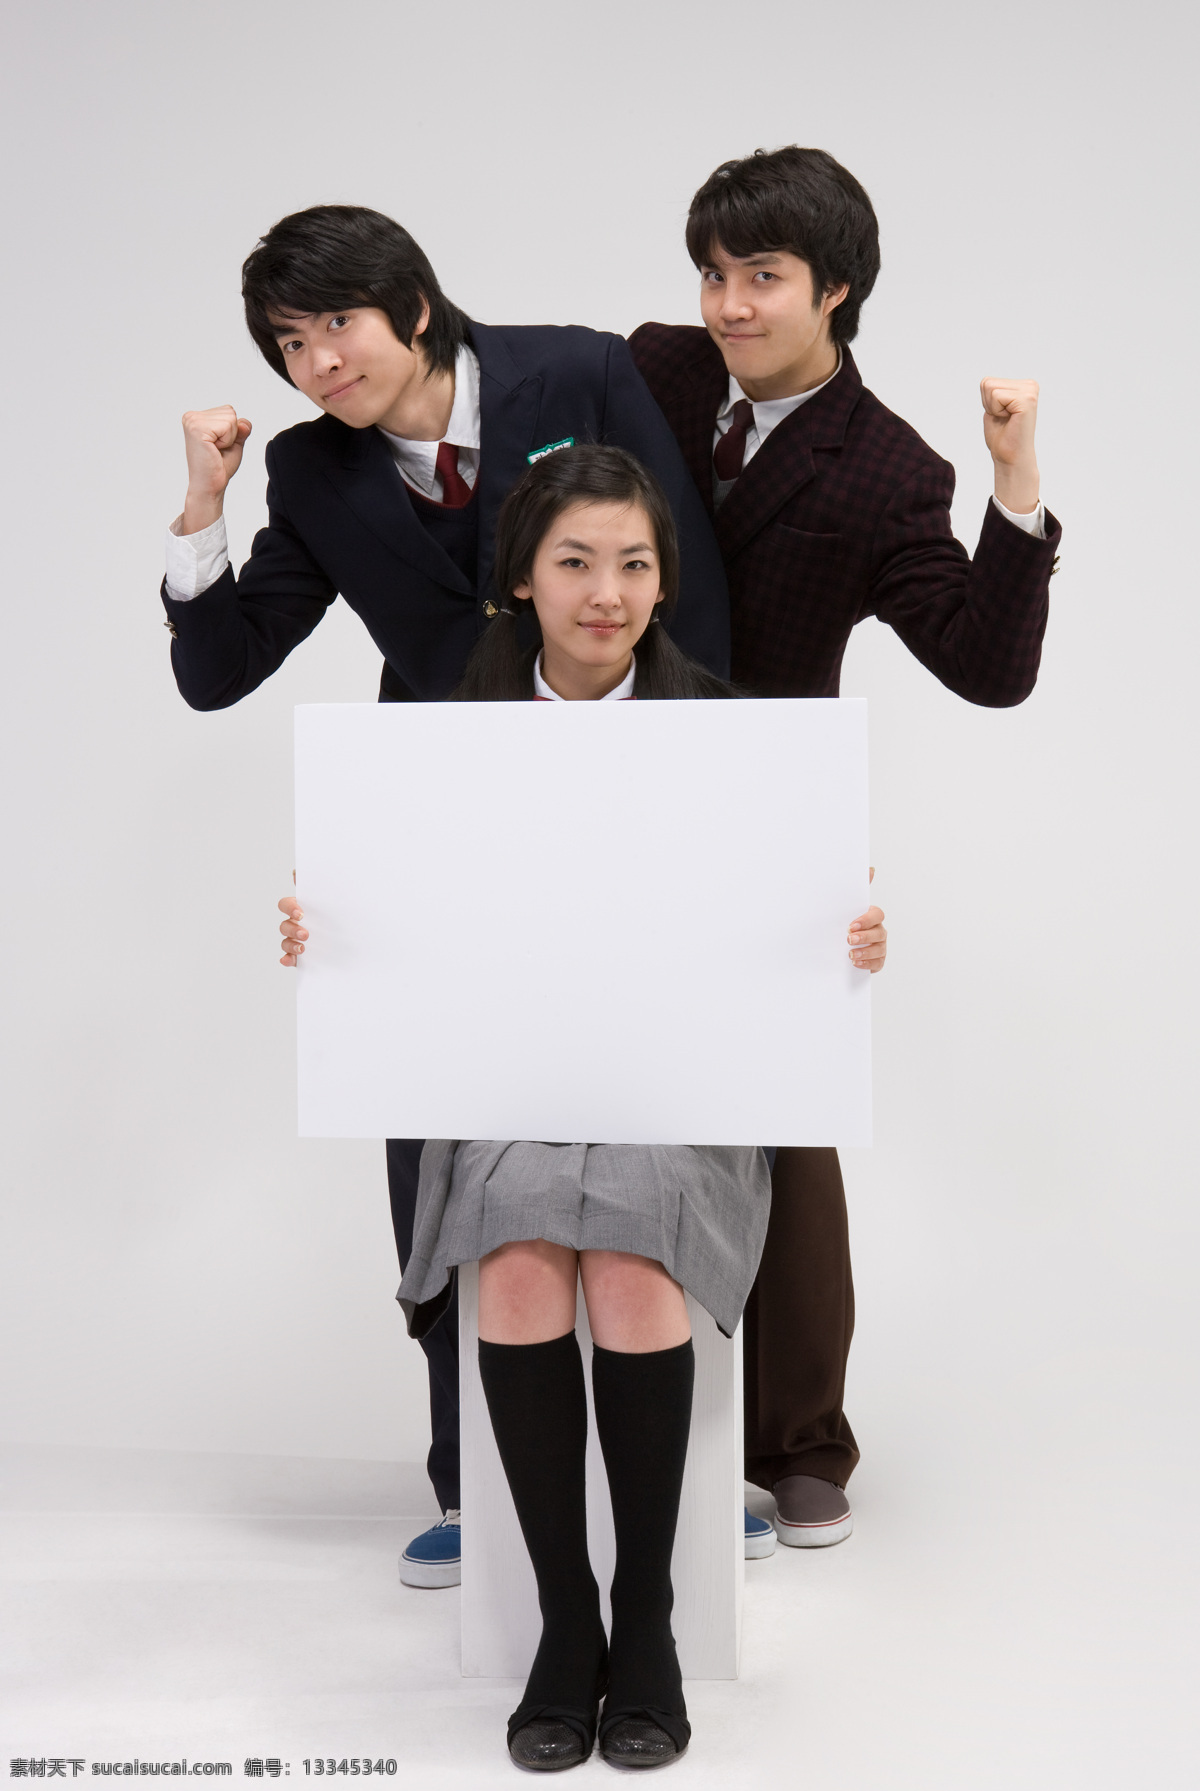 三个 开心 自信 学生 女生 男生 同学 朋友 友谊 服装 学生服 正装 坐着 站着 拿着 白板 亲密 举手 微笑 高清图片 生活人物 人物图片